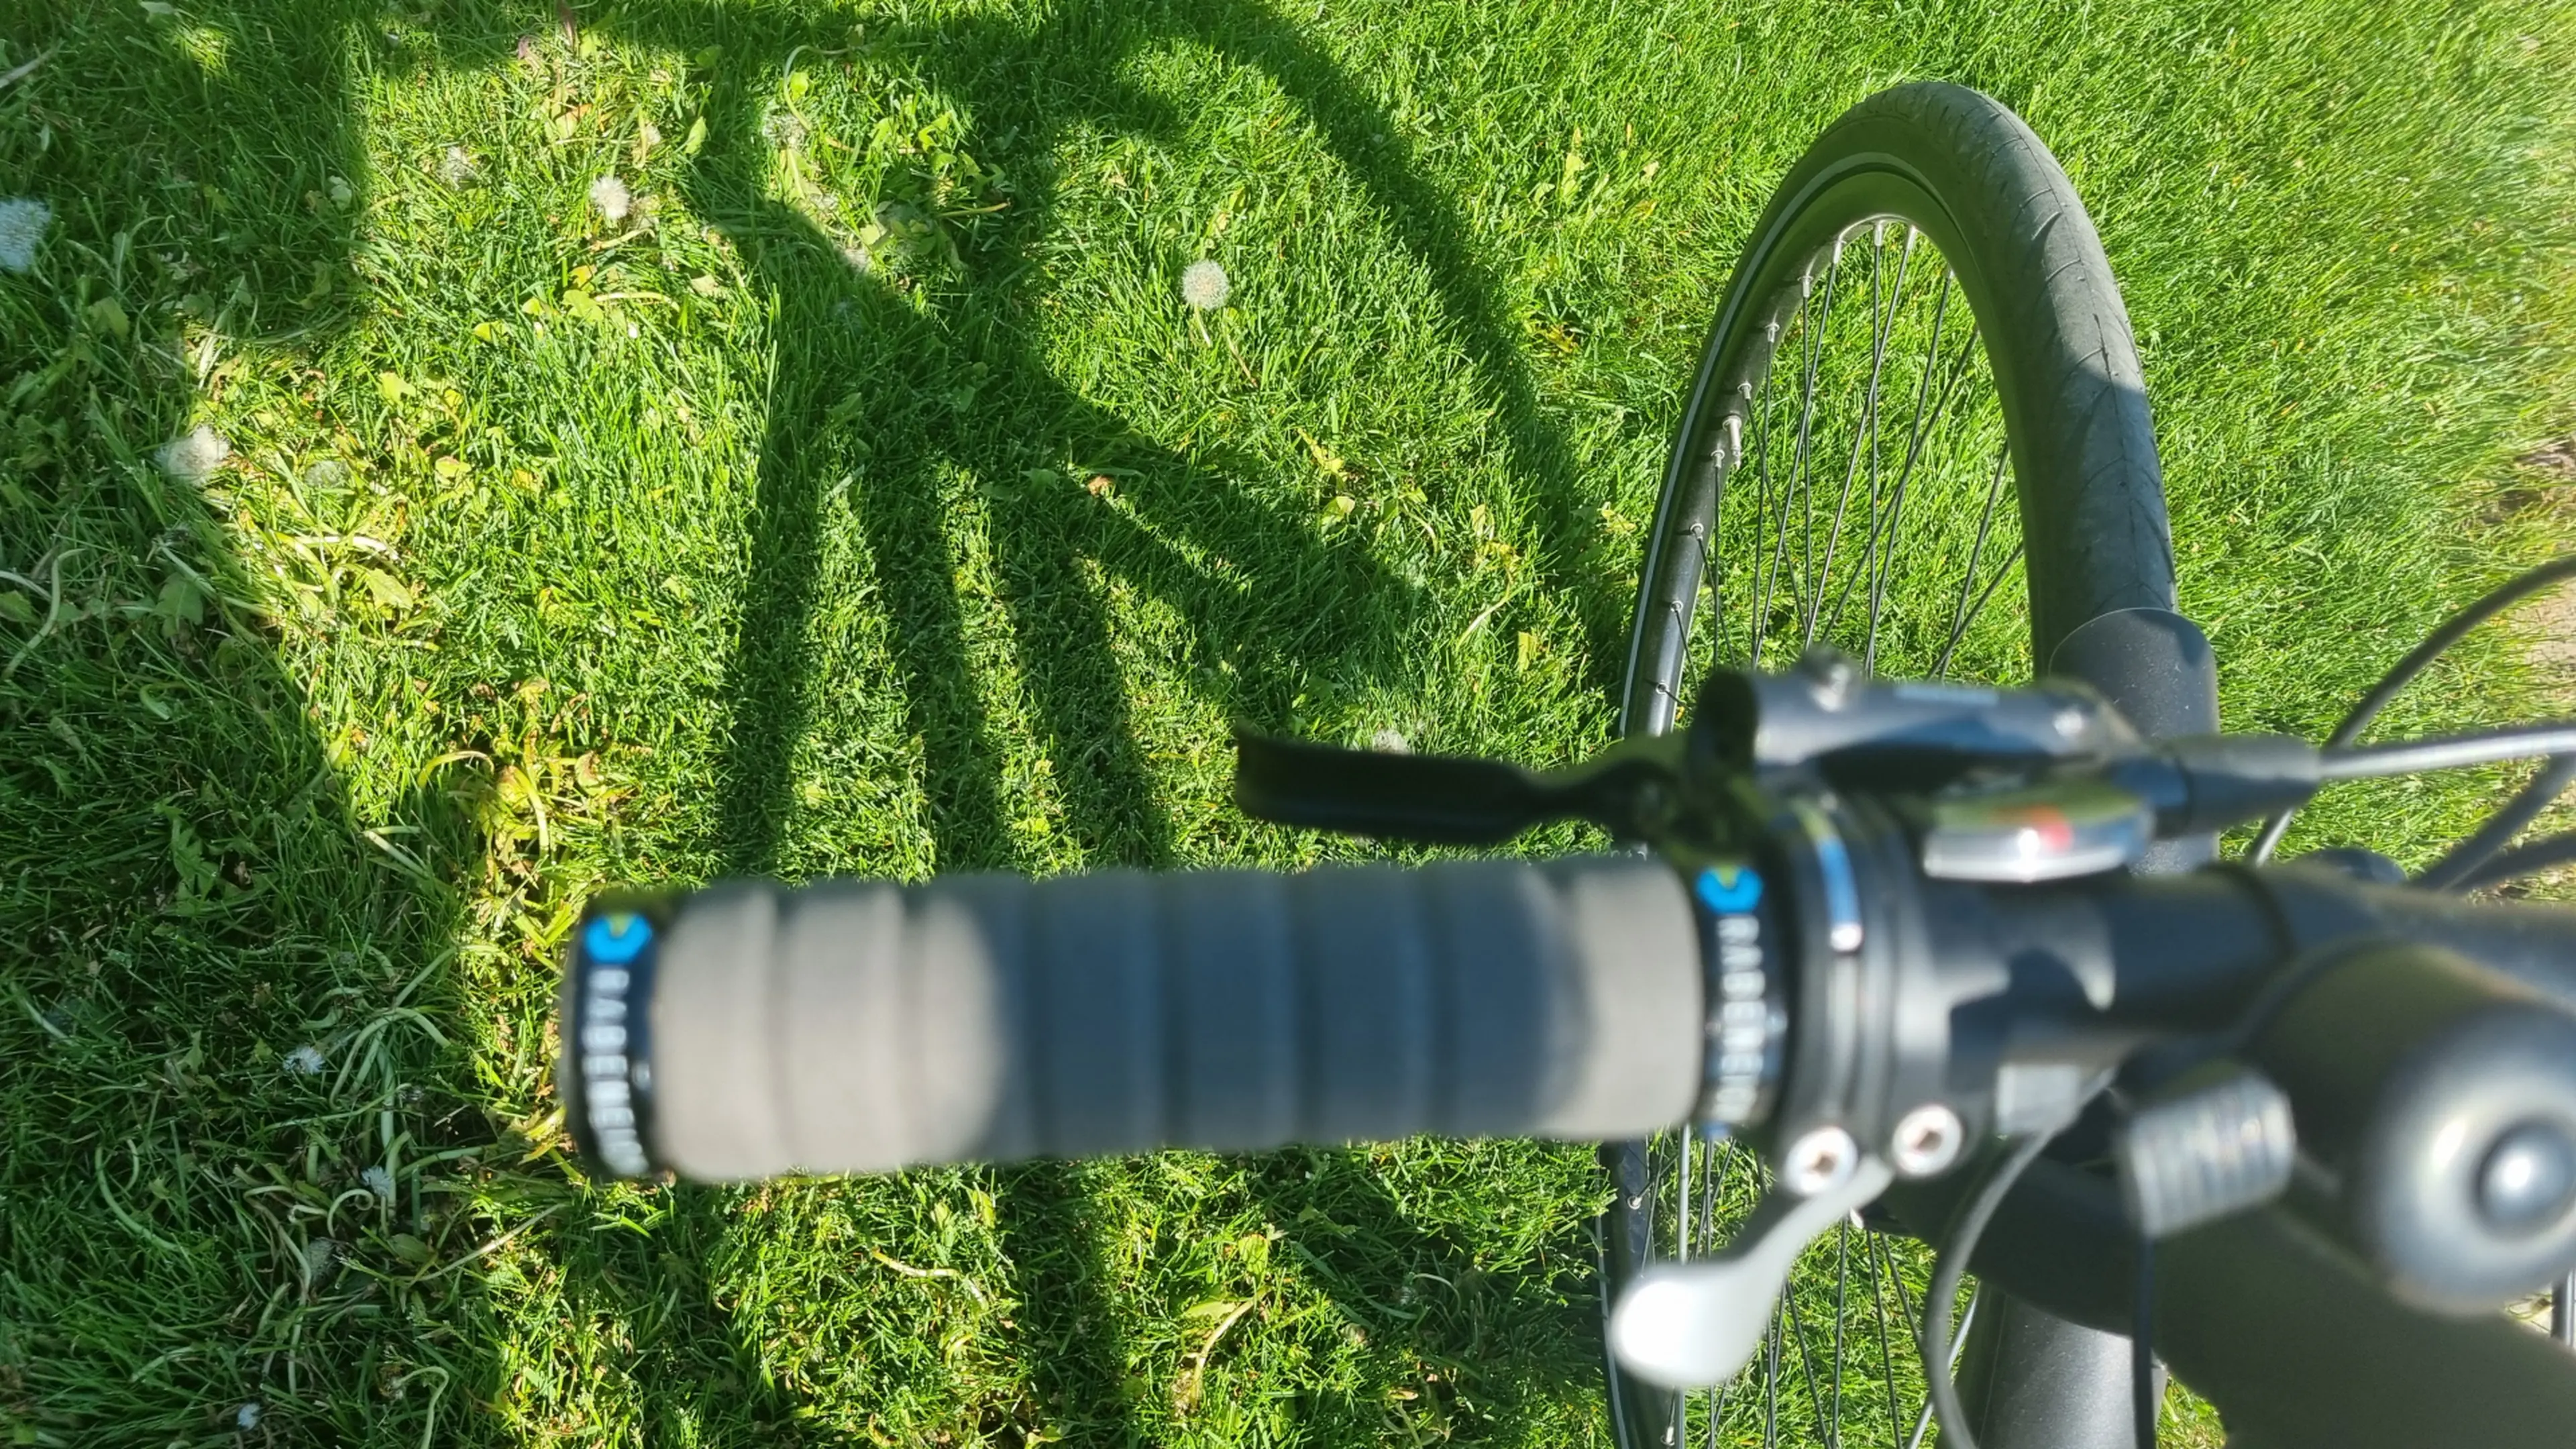 10. Bicicleta de ture/ oras Rabeneick TS8, Shimano XT, marime 52cm